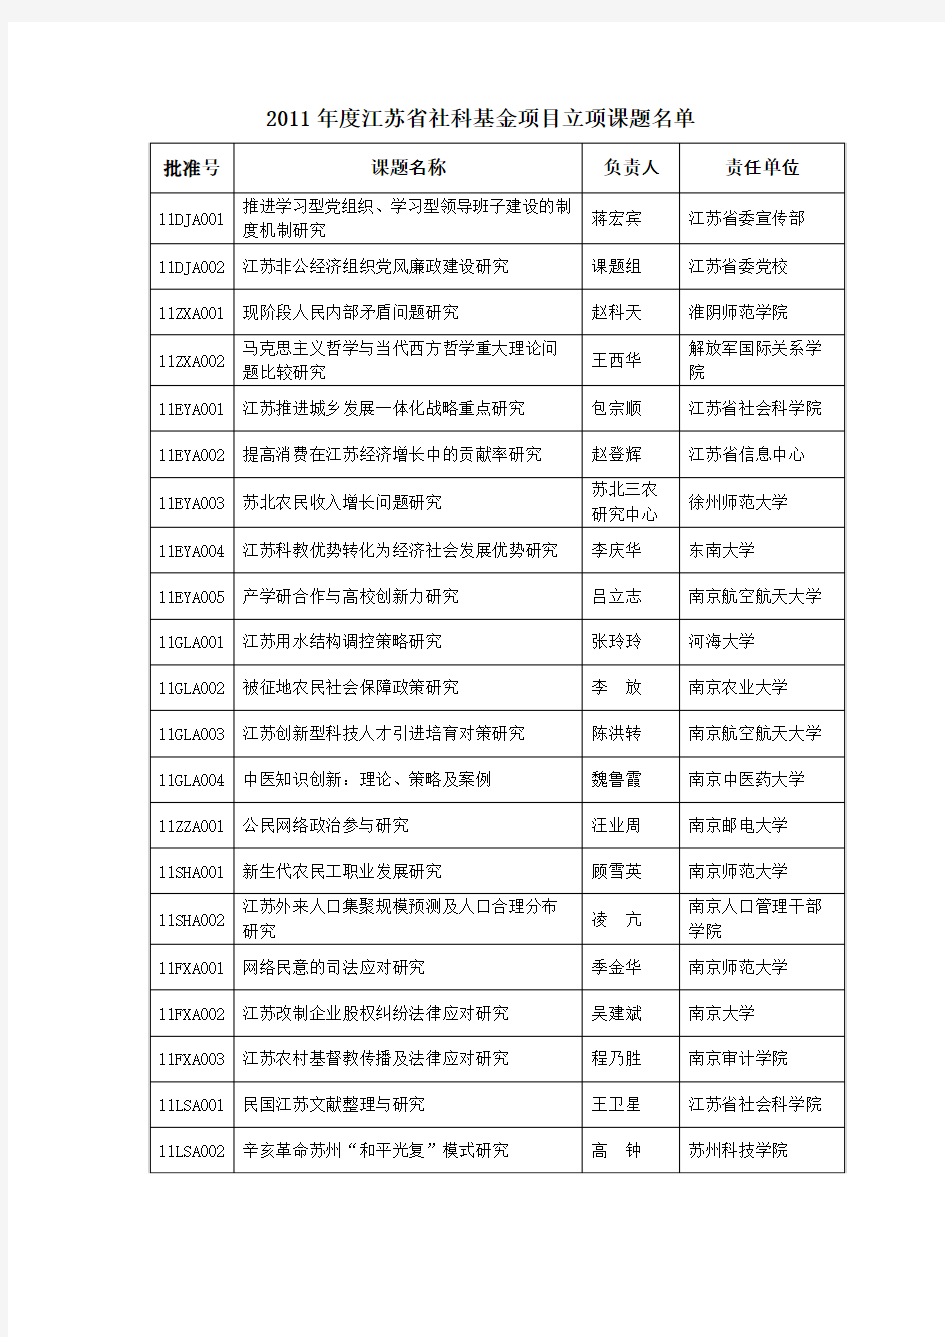 2011年度江苏省社科基金项目立项课题名单